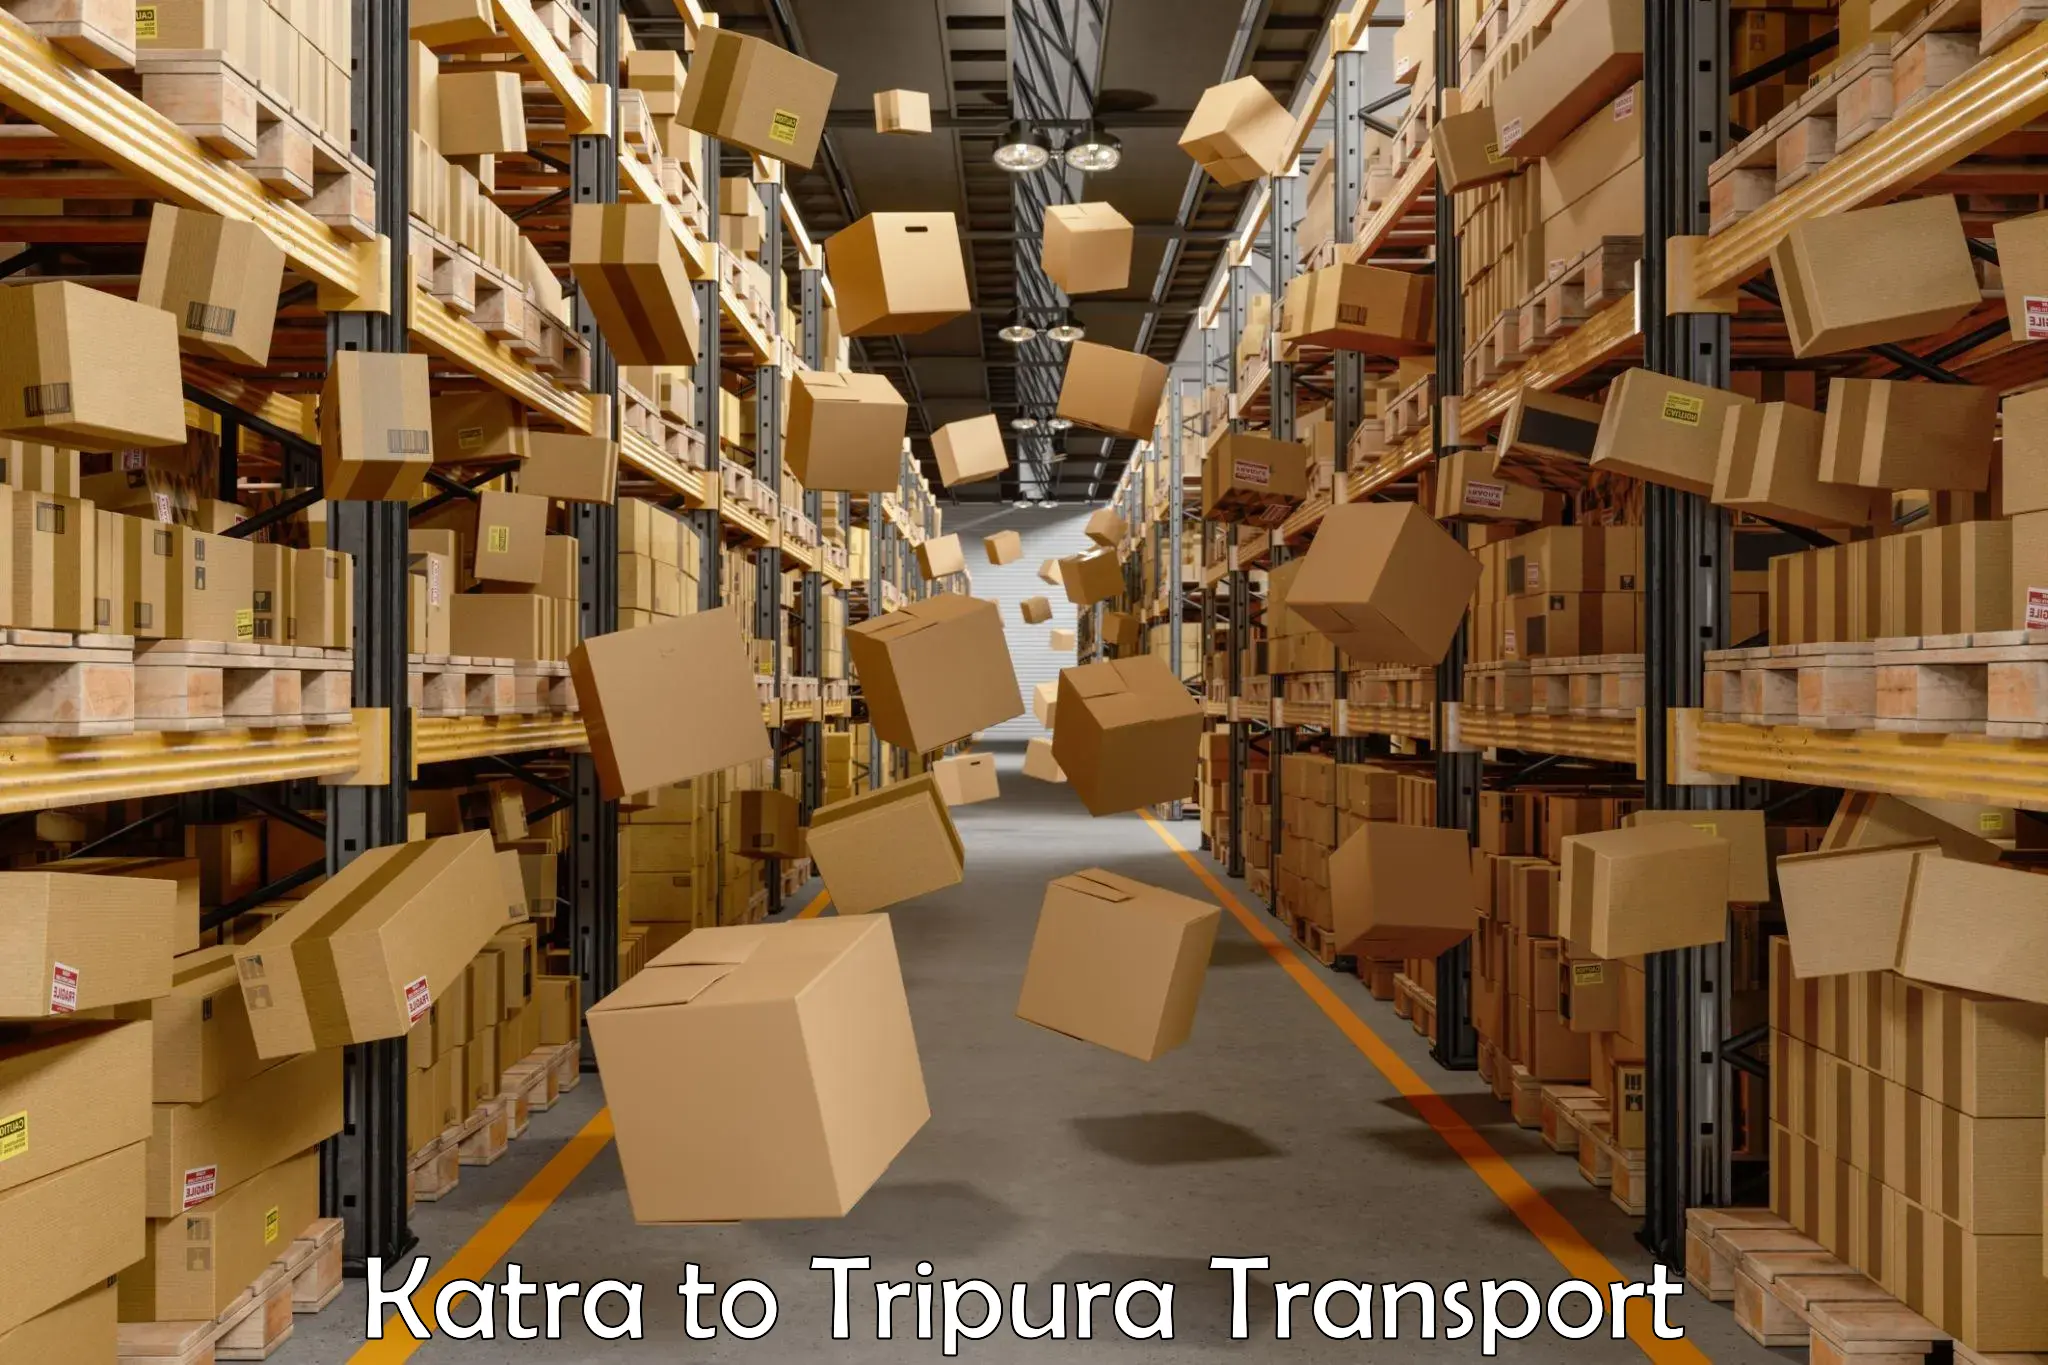 Lorry transport service Katra to Kailashahar